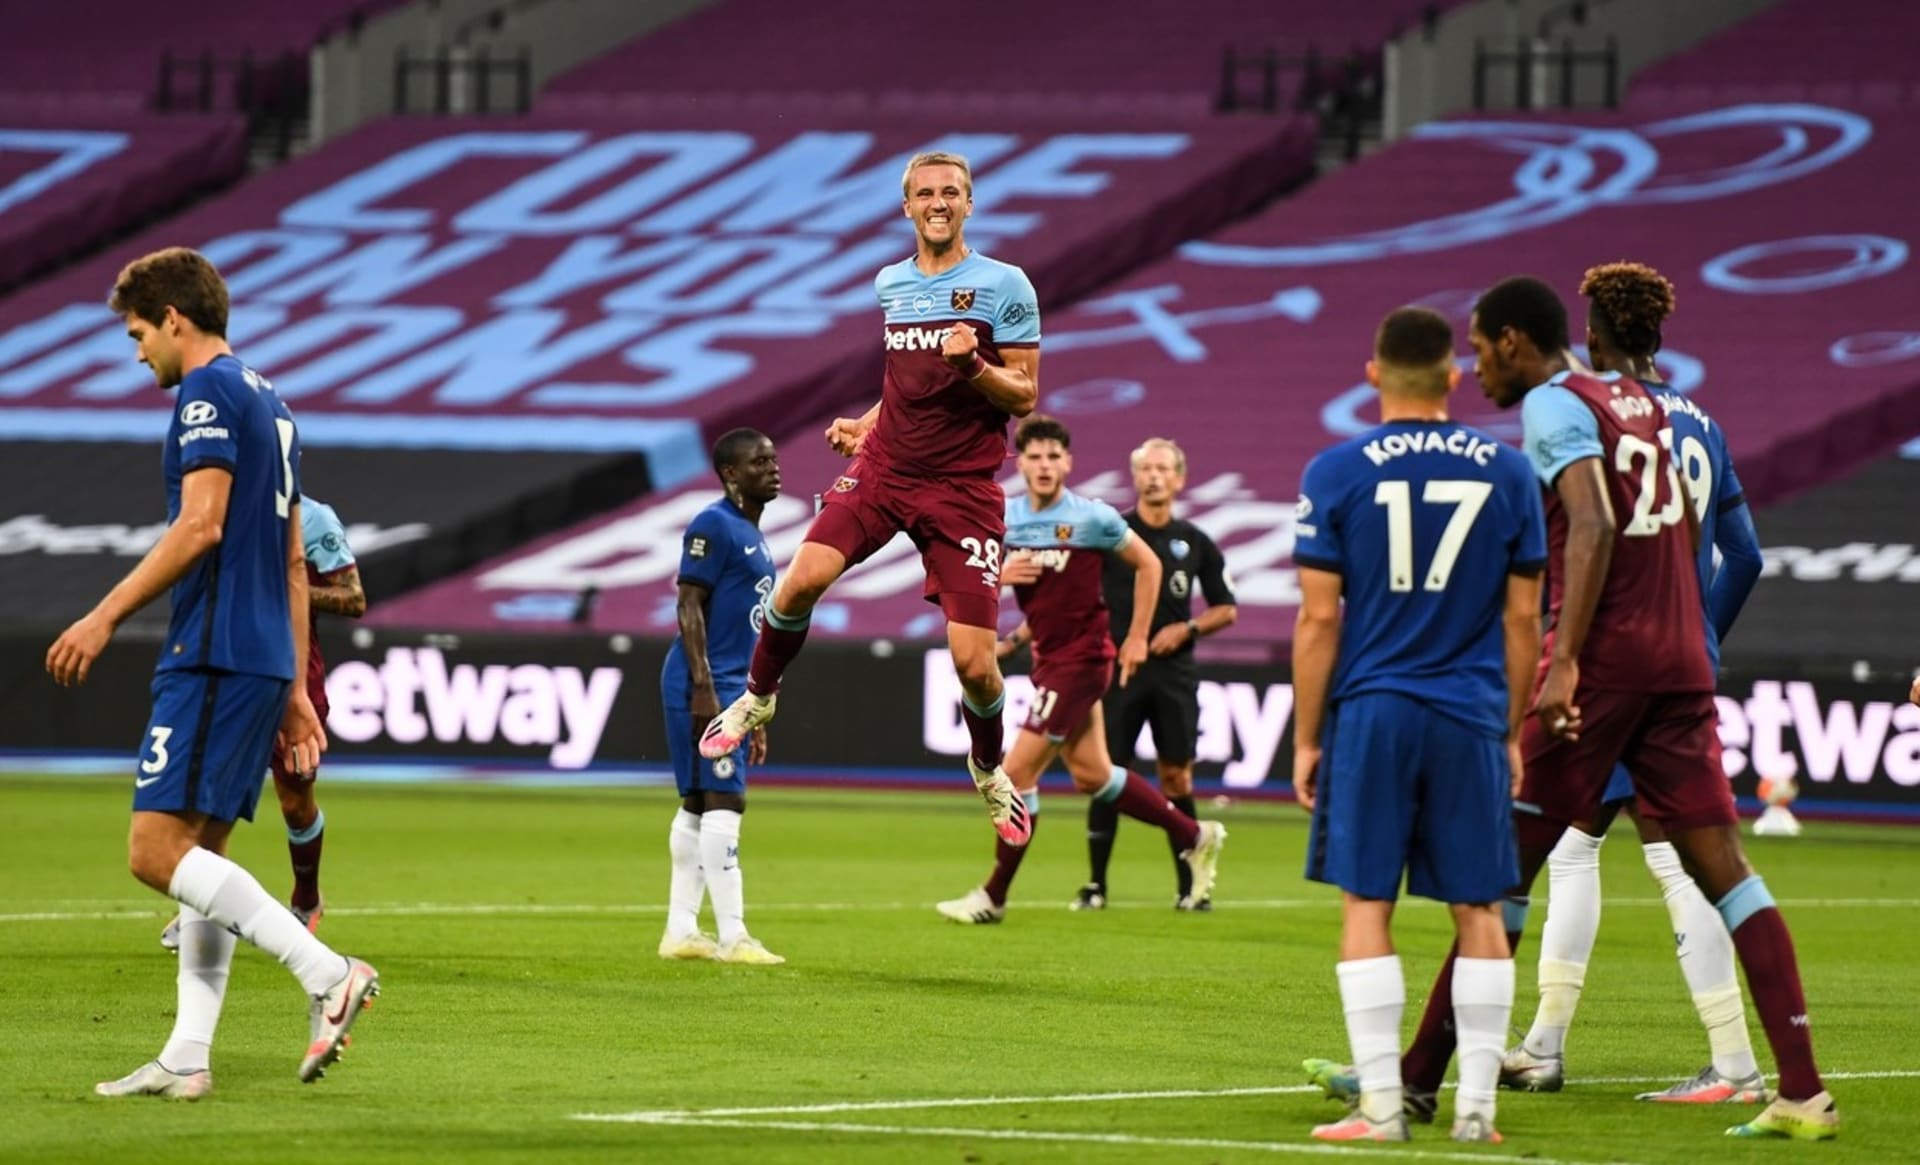 První trefa v Premier League. Souček pomohl gólem v zápase proti Chelsea k cennému vítězství 3:2.